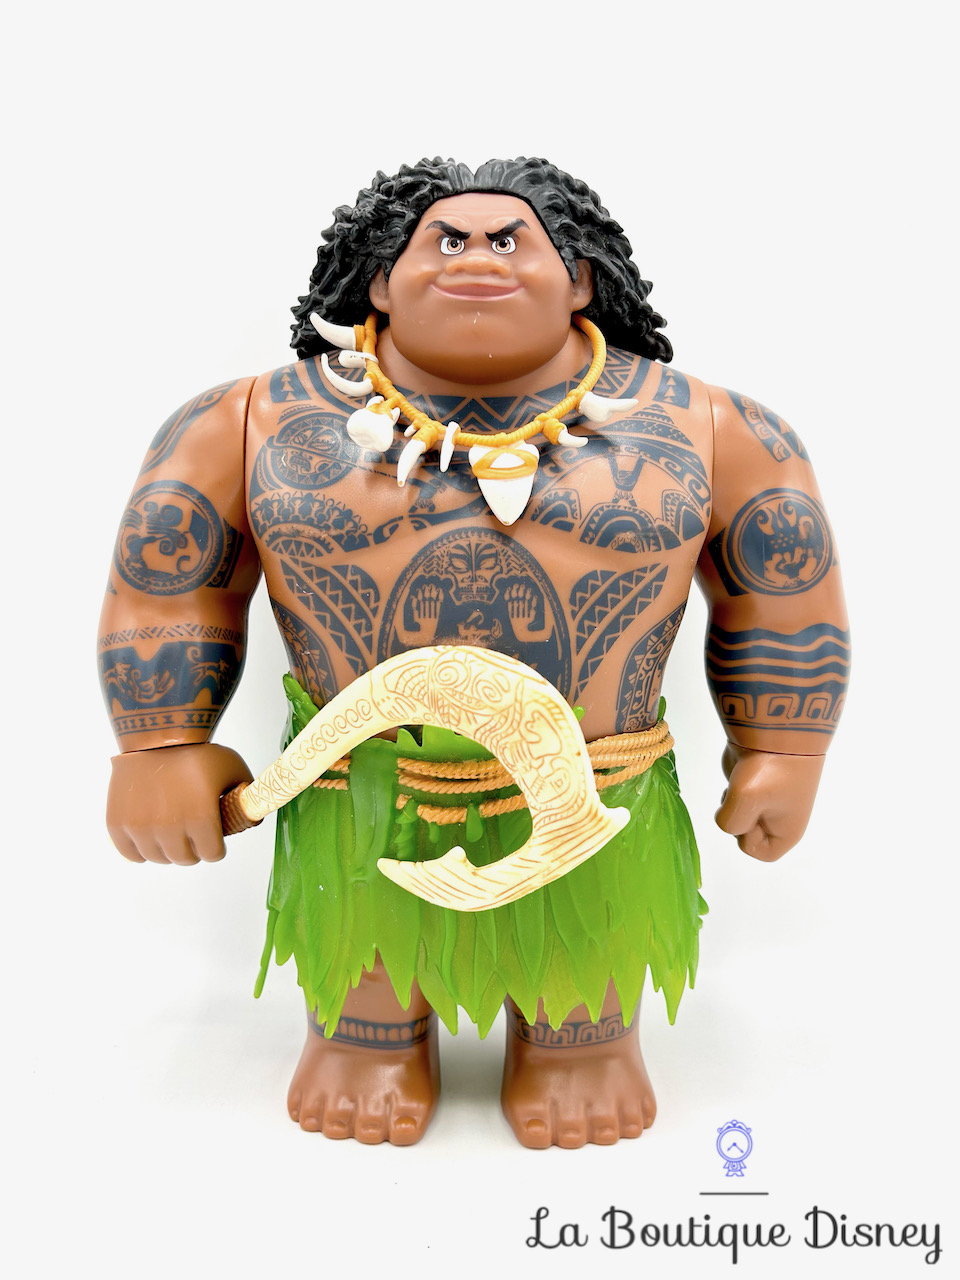 Grande Figurine Maui Le demi-dieu Disney Hasbro 2015 plastique poupée Vaiana 30 cm